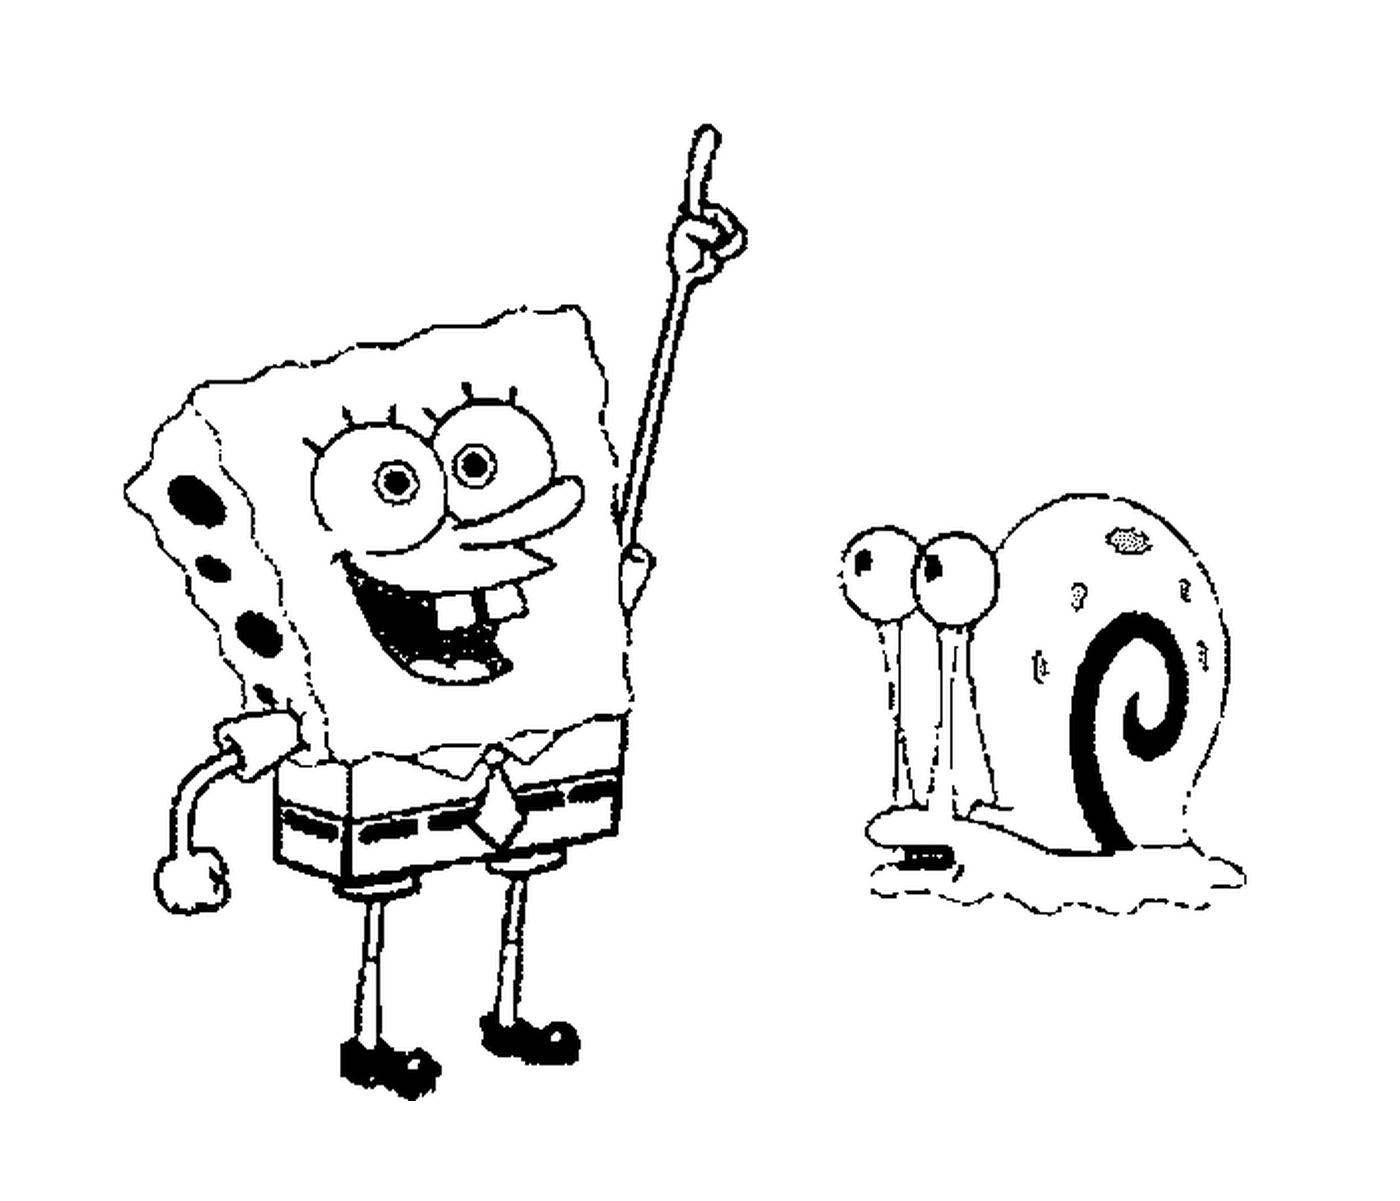  Bild von Bob the Sponge und einer Schnecke 